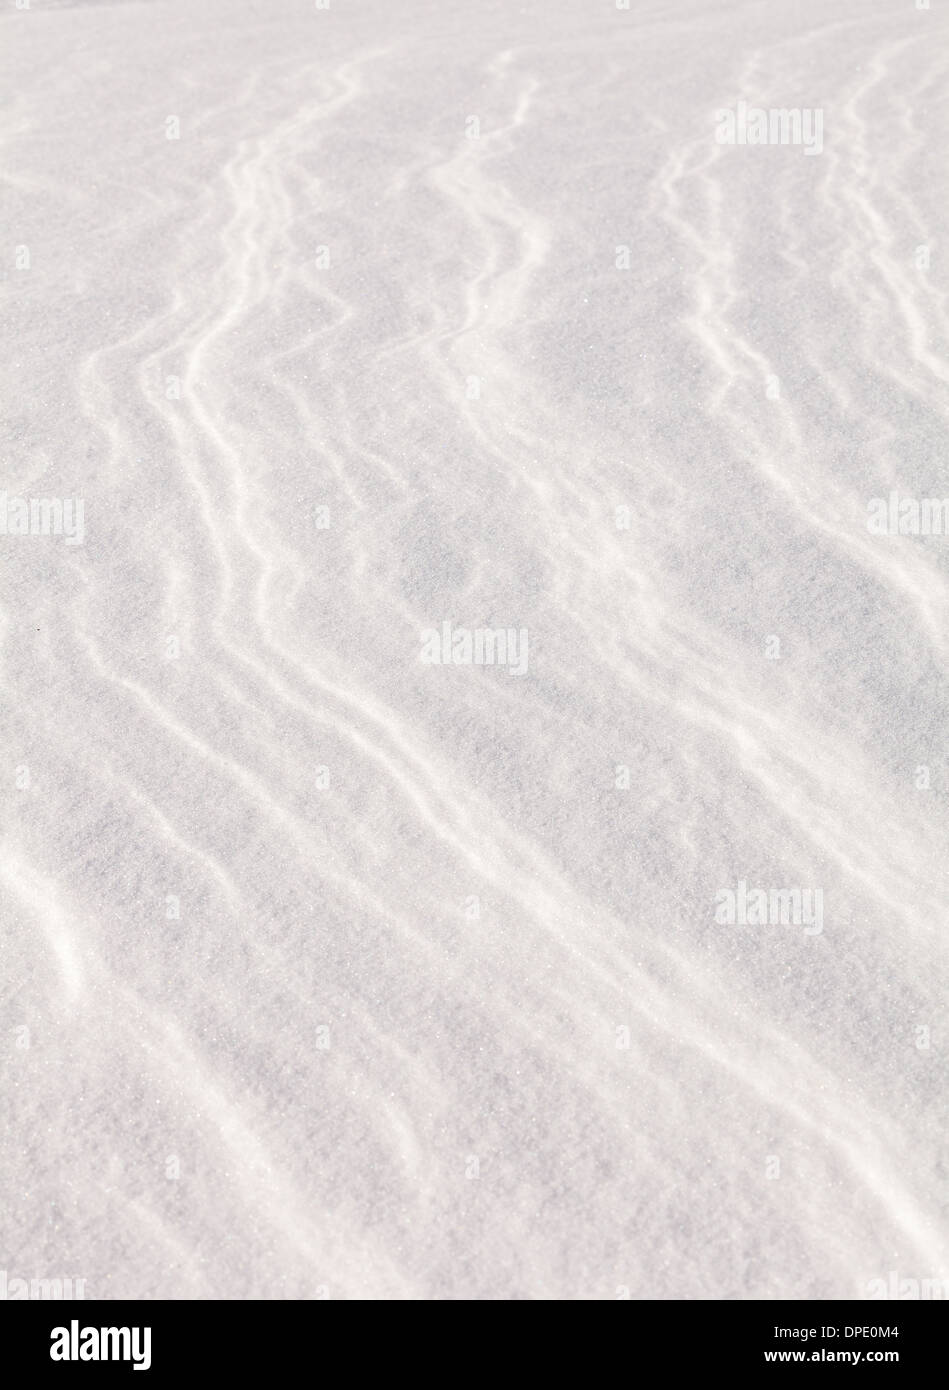 Los patrones de los vientos en forma de nieve Foto de stock